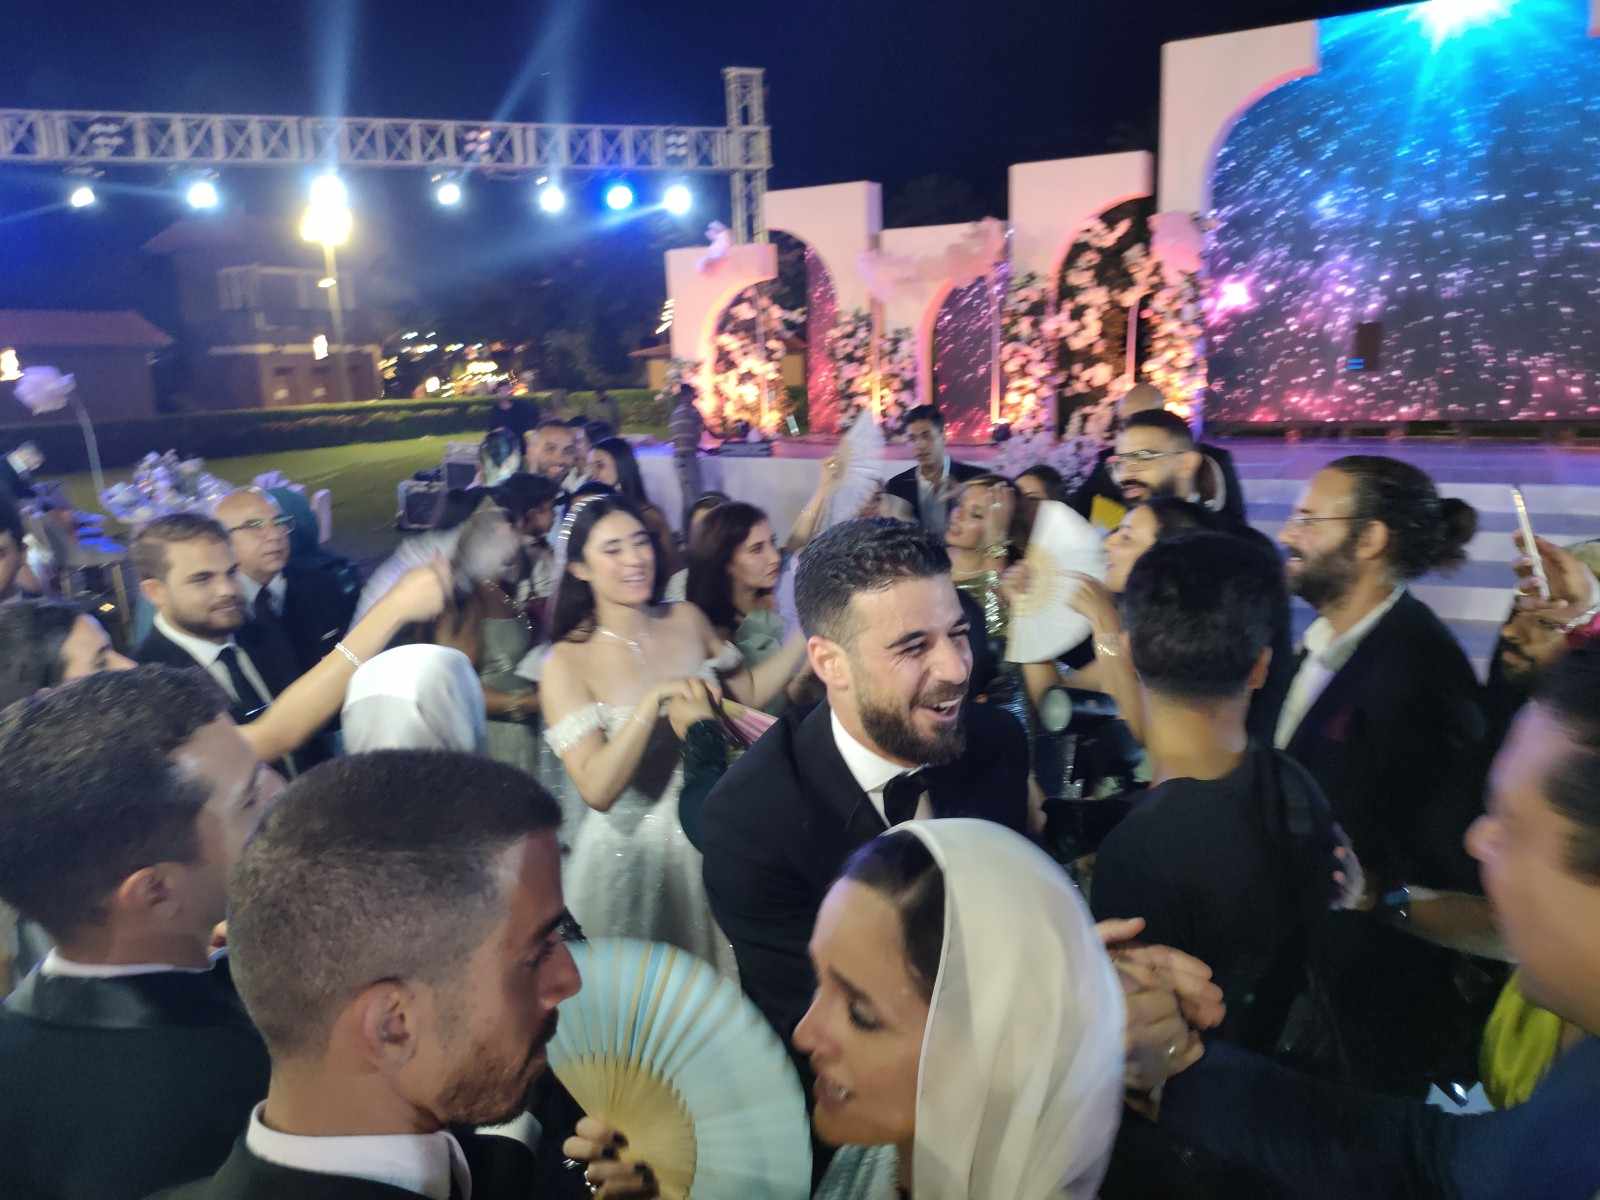 الفرحه في زفاف نور الشربيني بالإسكندرية